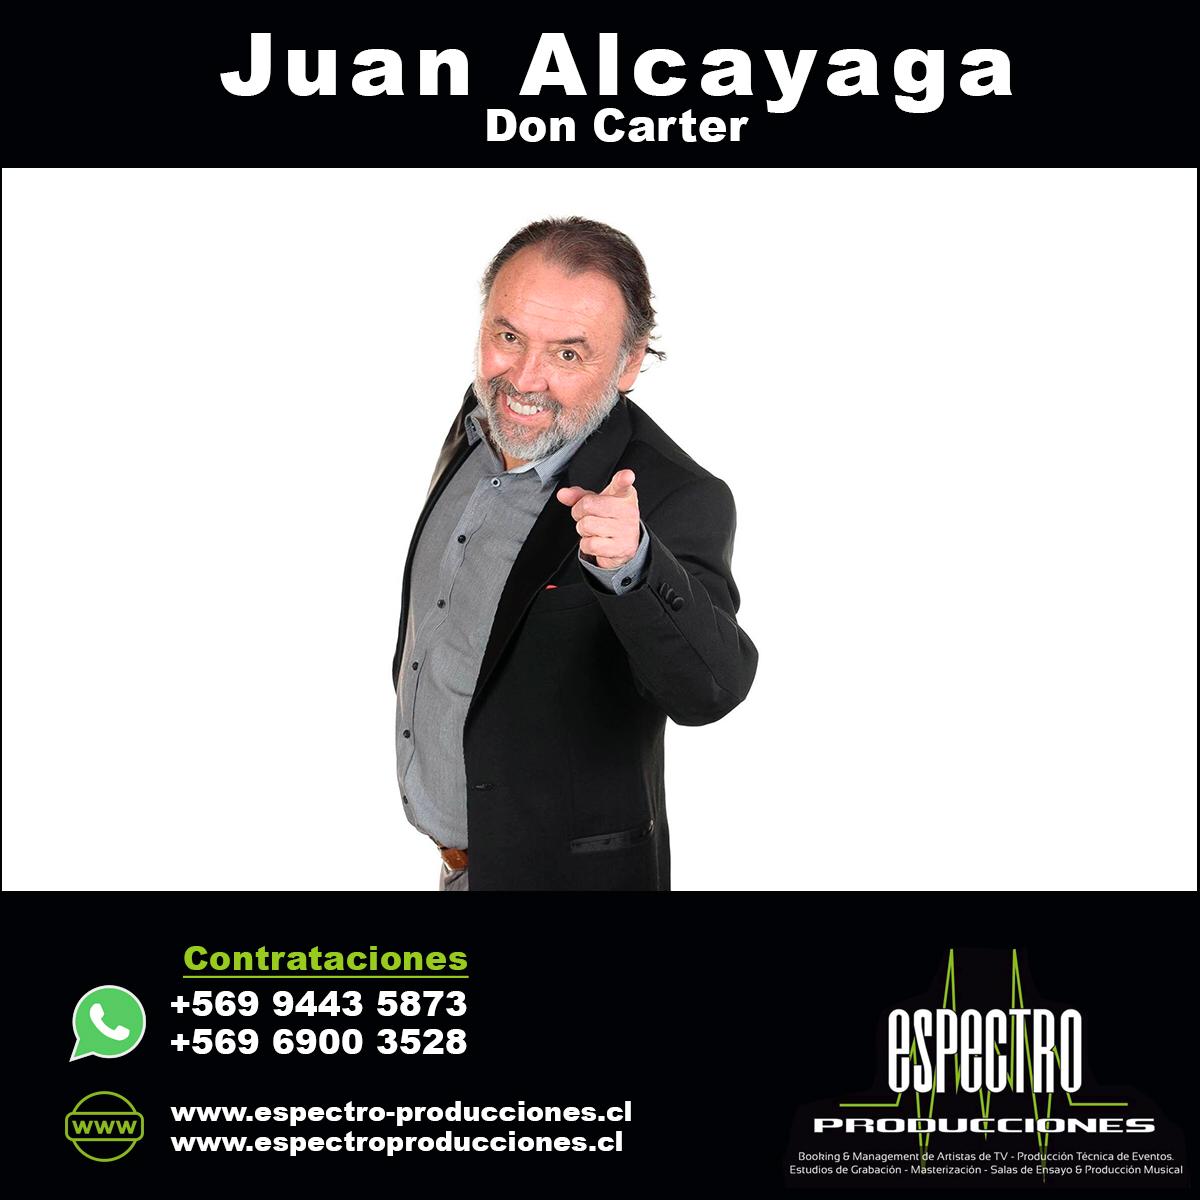 Don Carter (Juan Alcayaga)